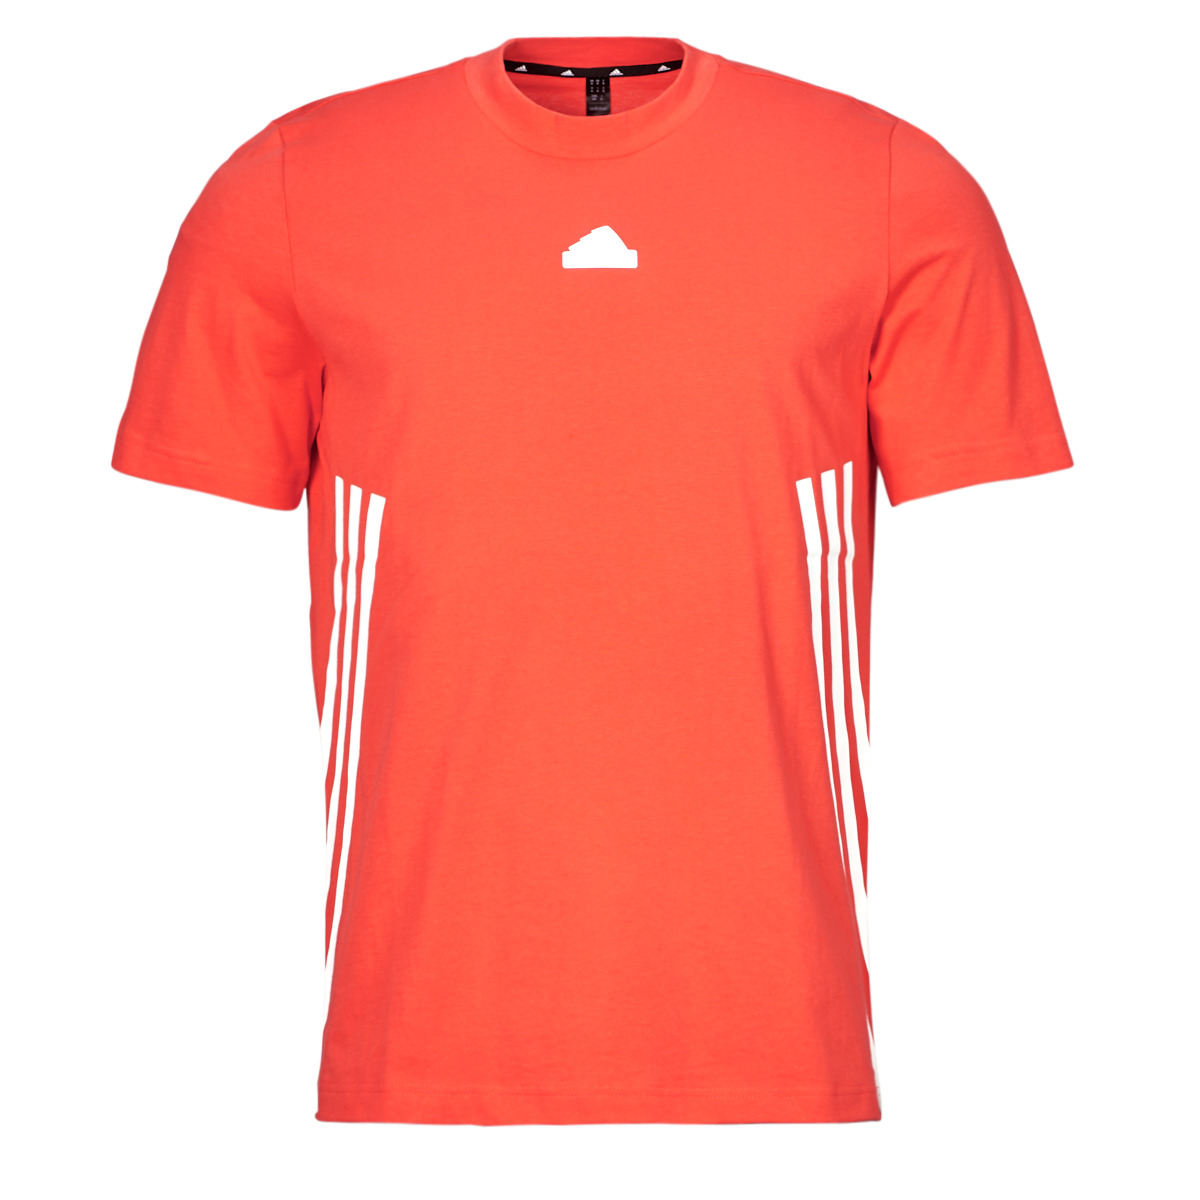 Adidas Sportswear Orange / Blanc M FI 3S REG T fJCQX7NC